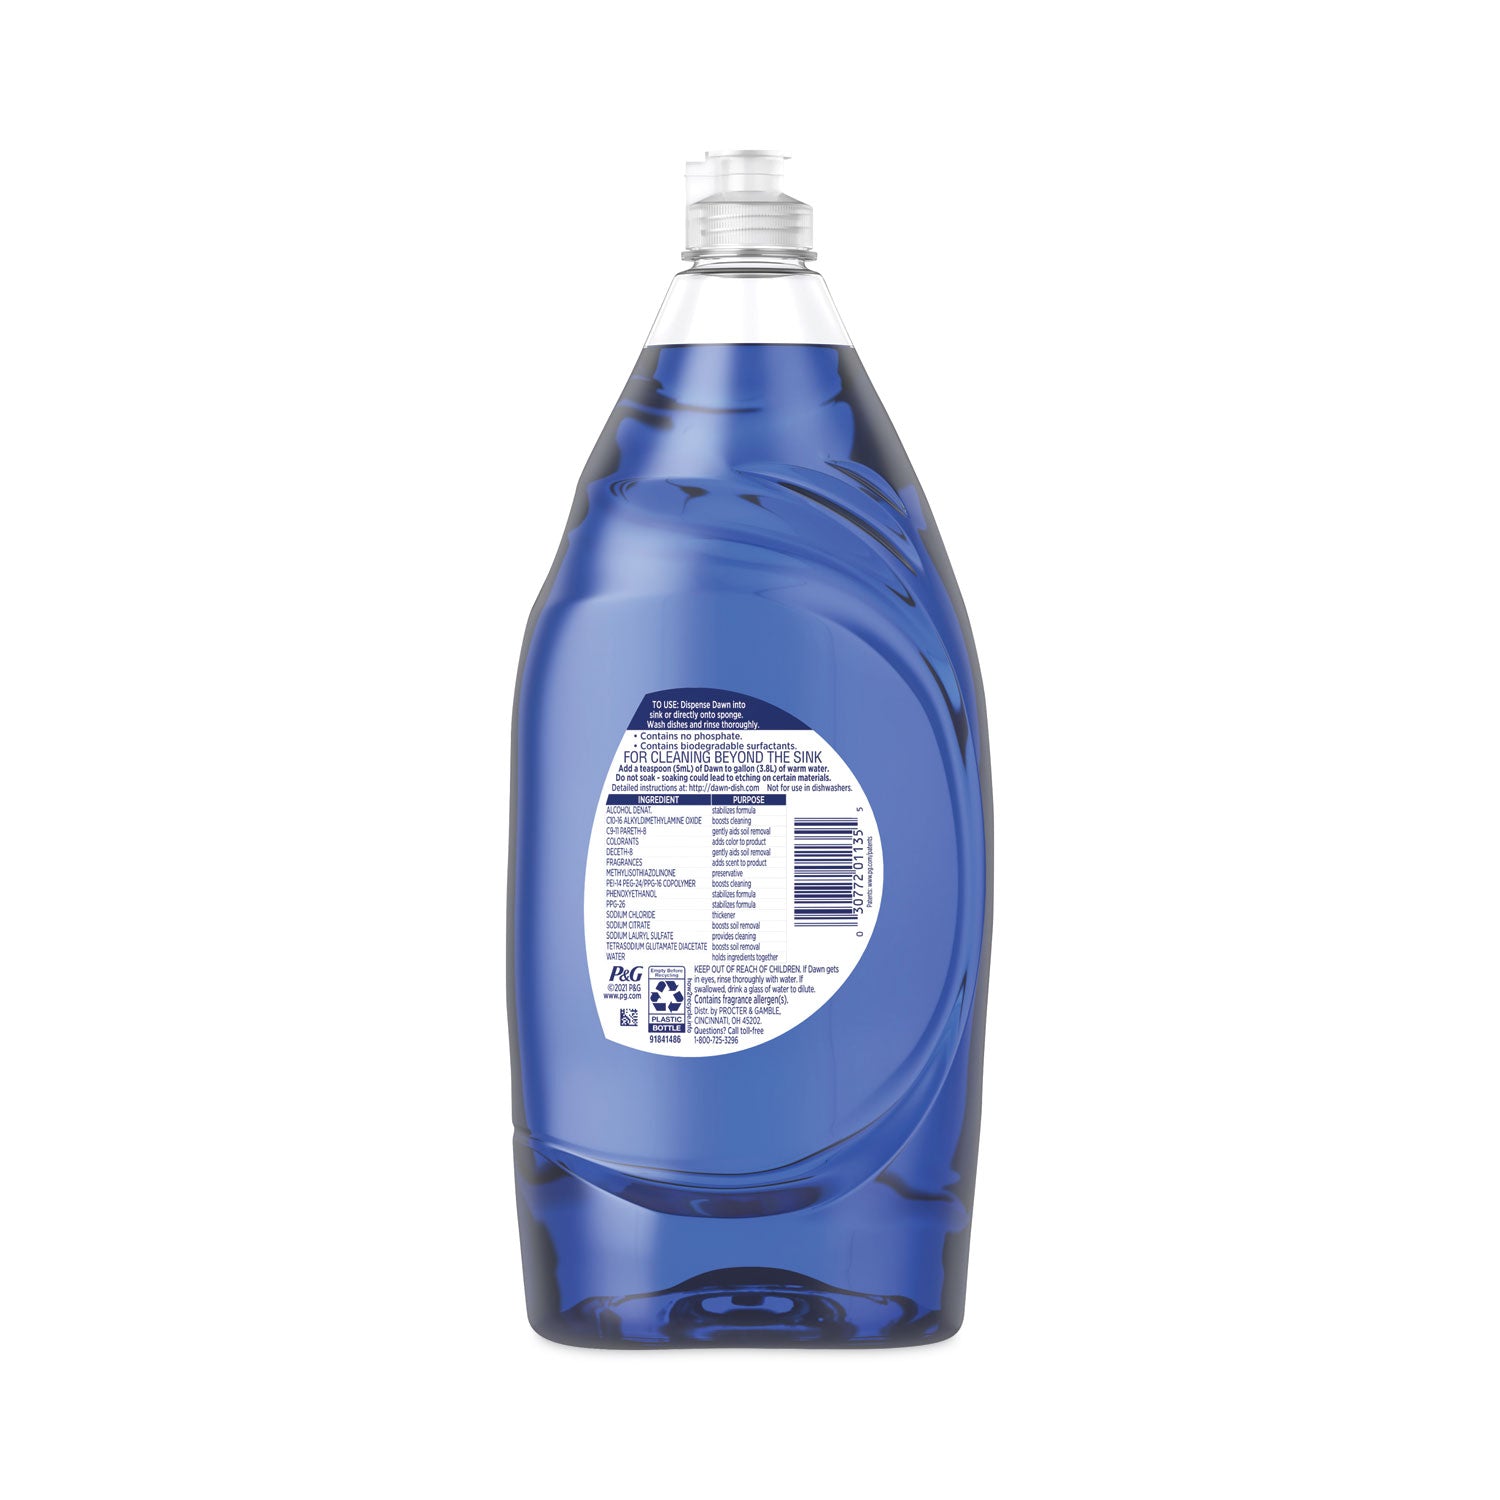 platinum-liquid-dish-detergent-refreshing-rain-scent-327-oz-bottle-8-carton_pgc01135 - 4